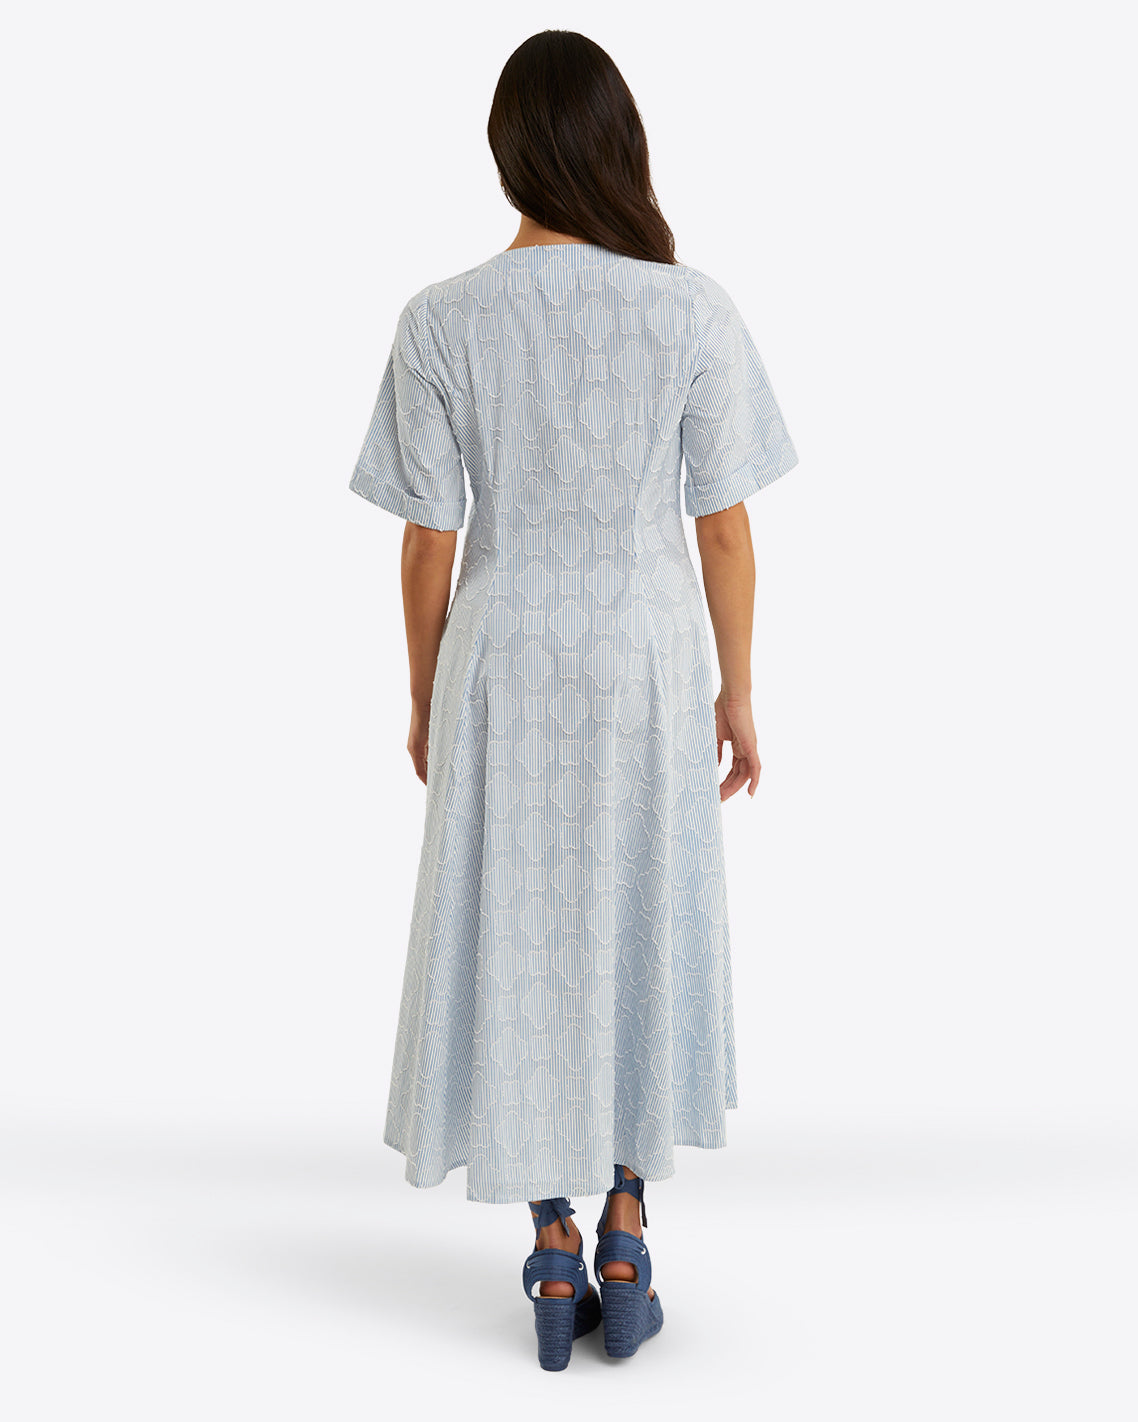 Erin Short Sleeve Dress in Textured Stripe